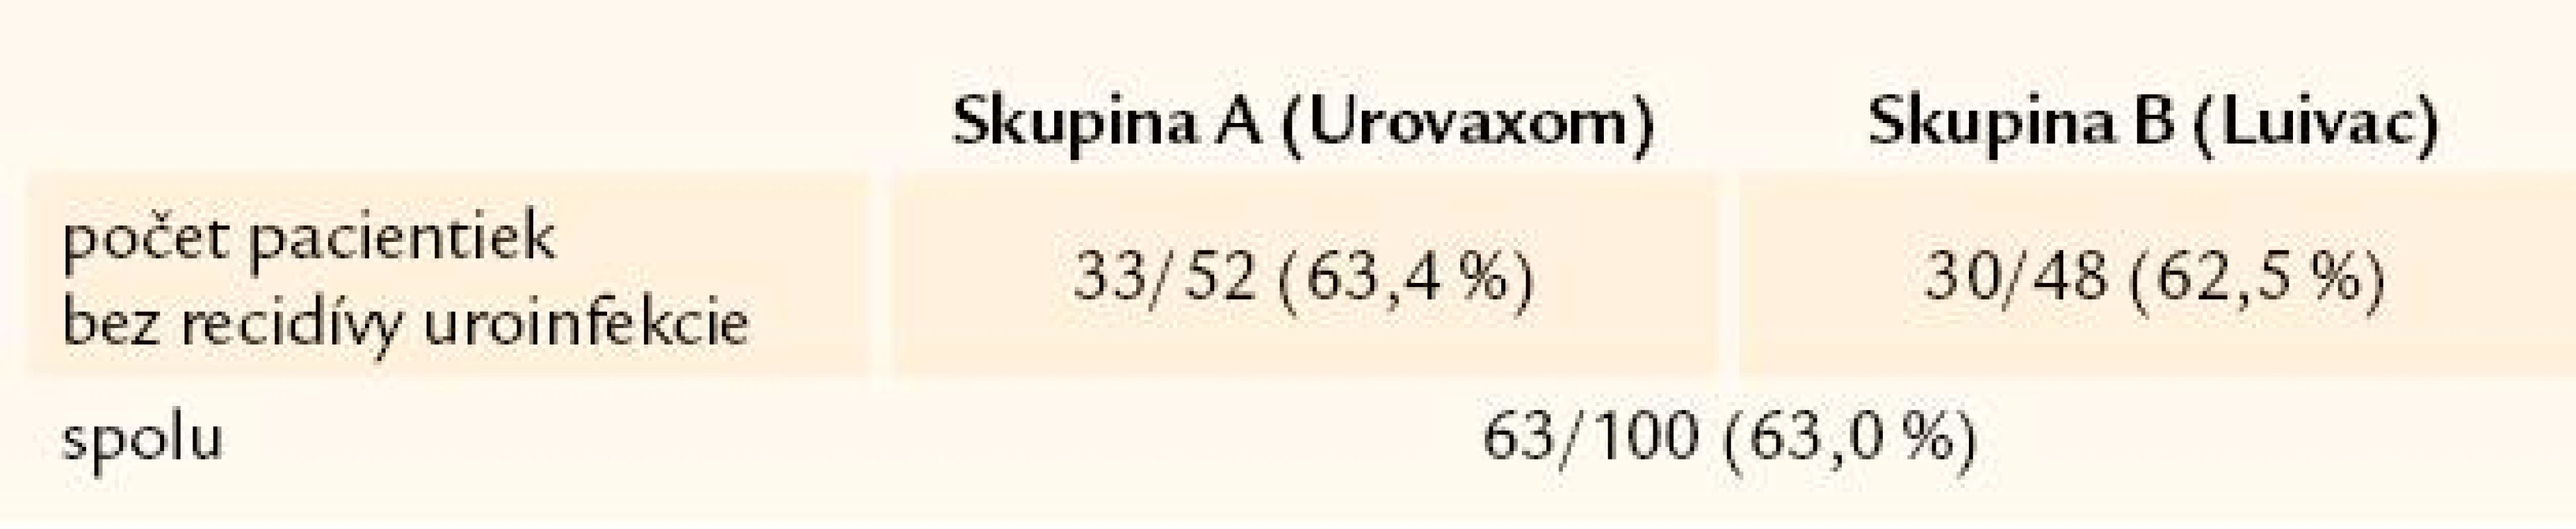 Počet pacientiek a recidív uroinfekcie po 3 rokoch sledovania.